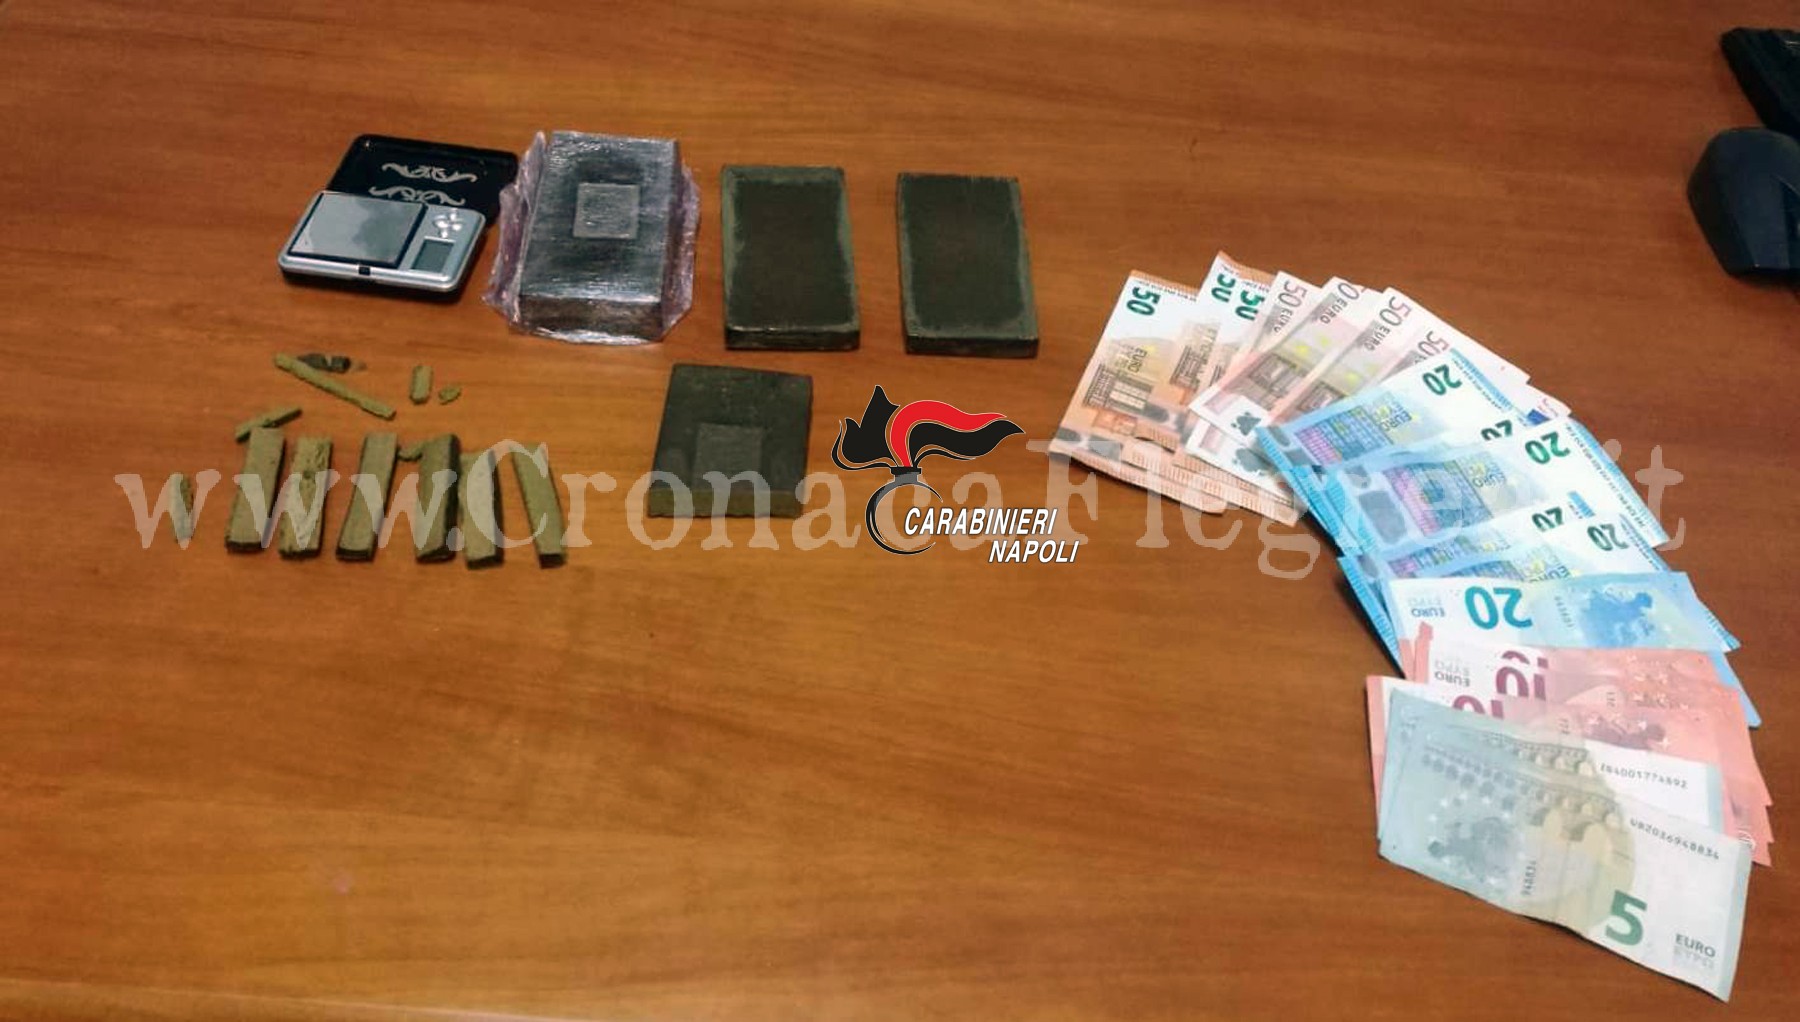 QUARTO/ Mezzo chilo di hashish in casa, carabinieri arrestano 42enne